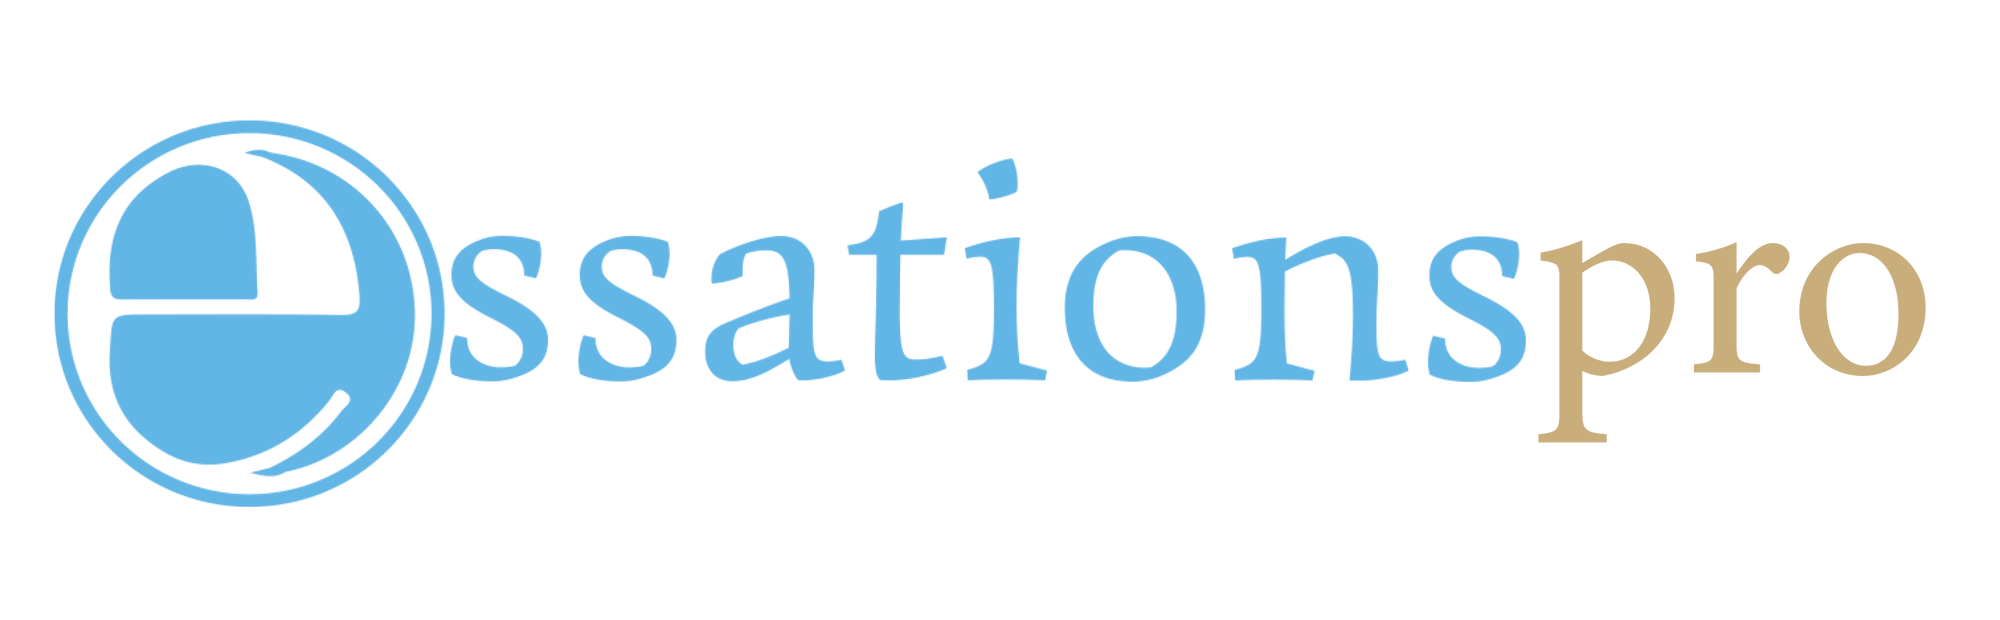 EssationsPro Logo